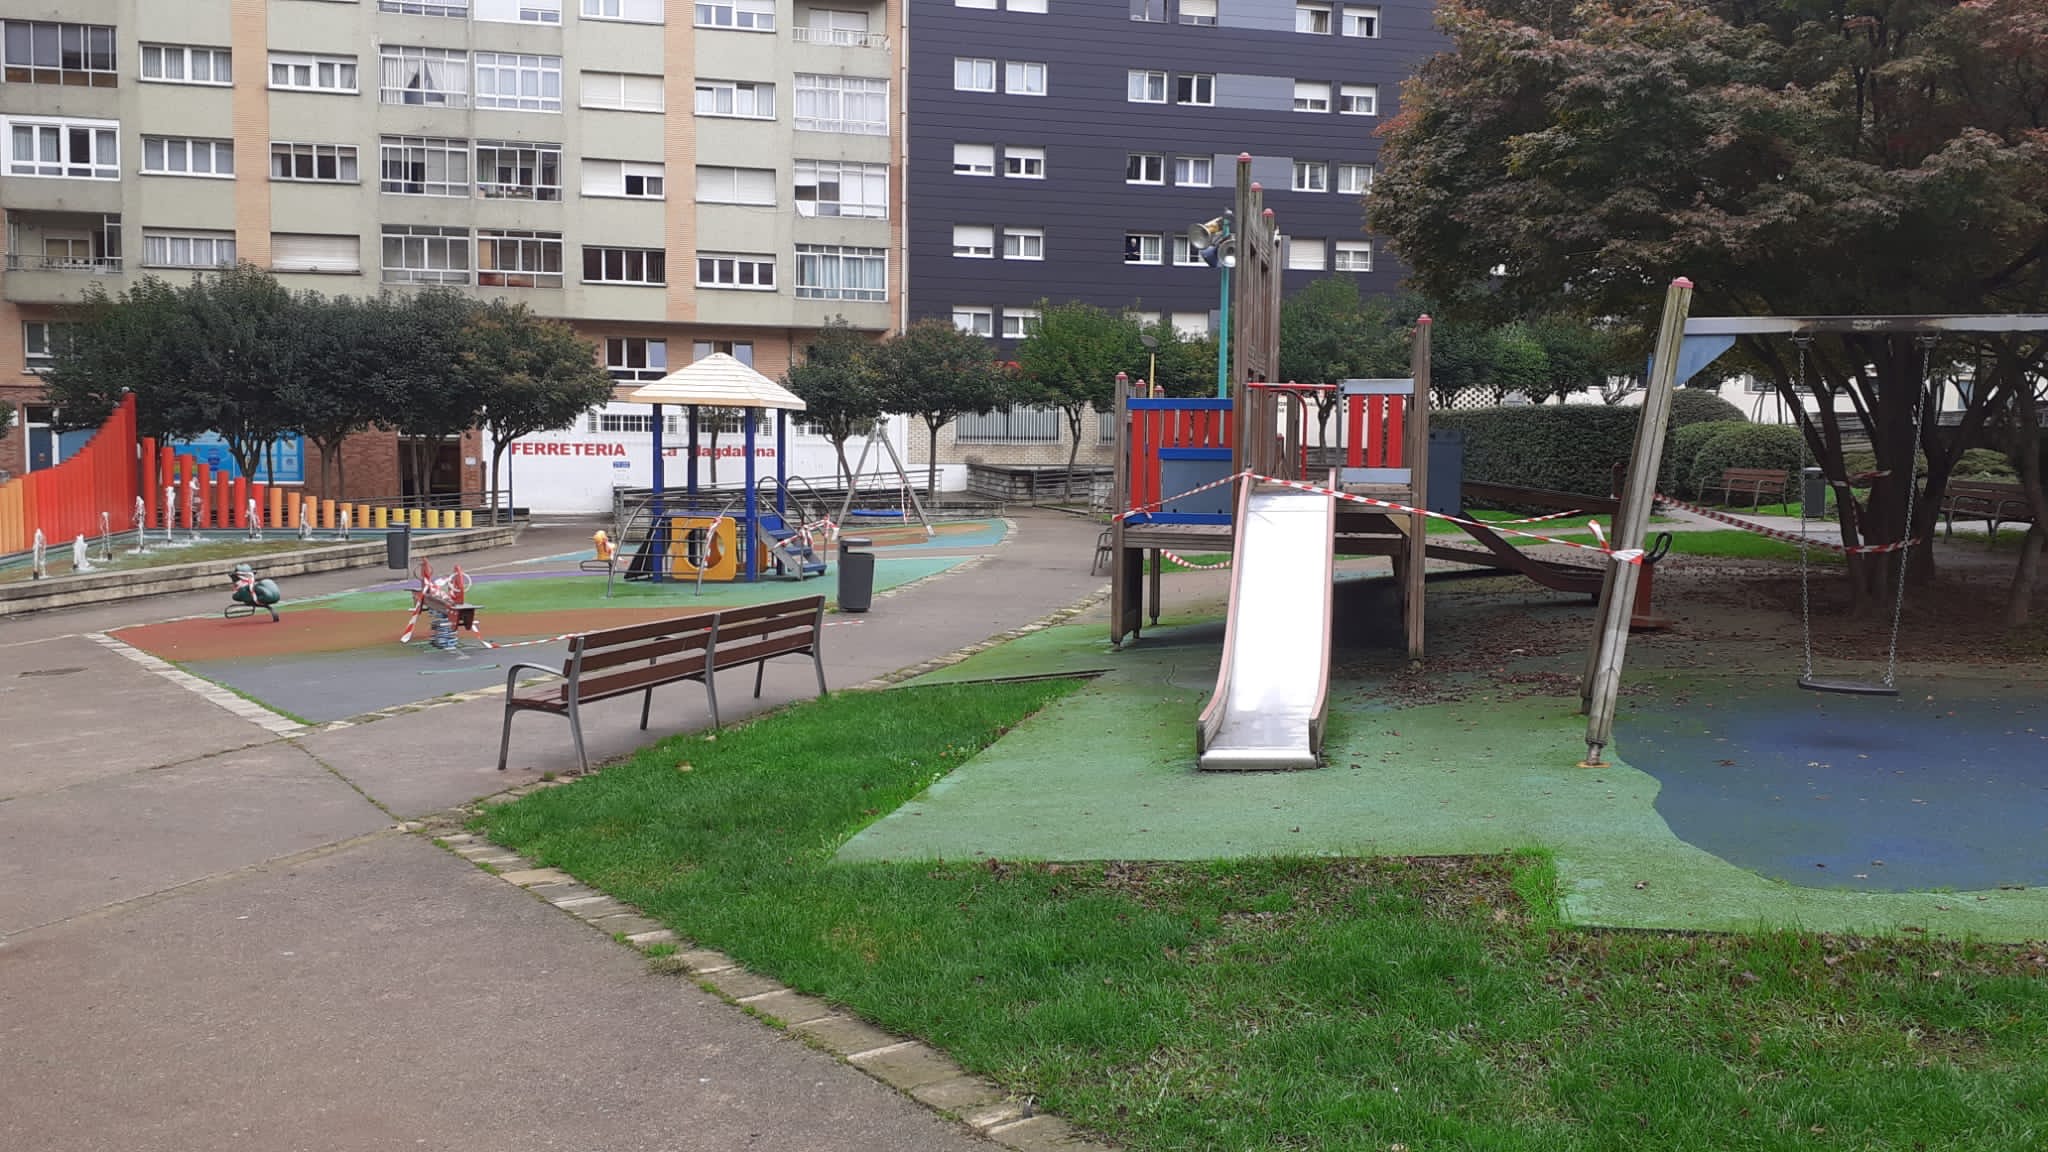 Cinco empresas optan a la renovación de los juegos infantiles y el suelo antigolpes del parque del Quirinal